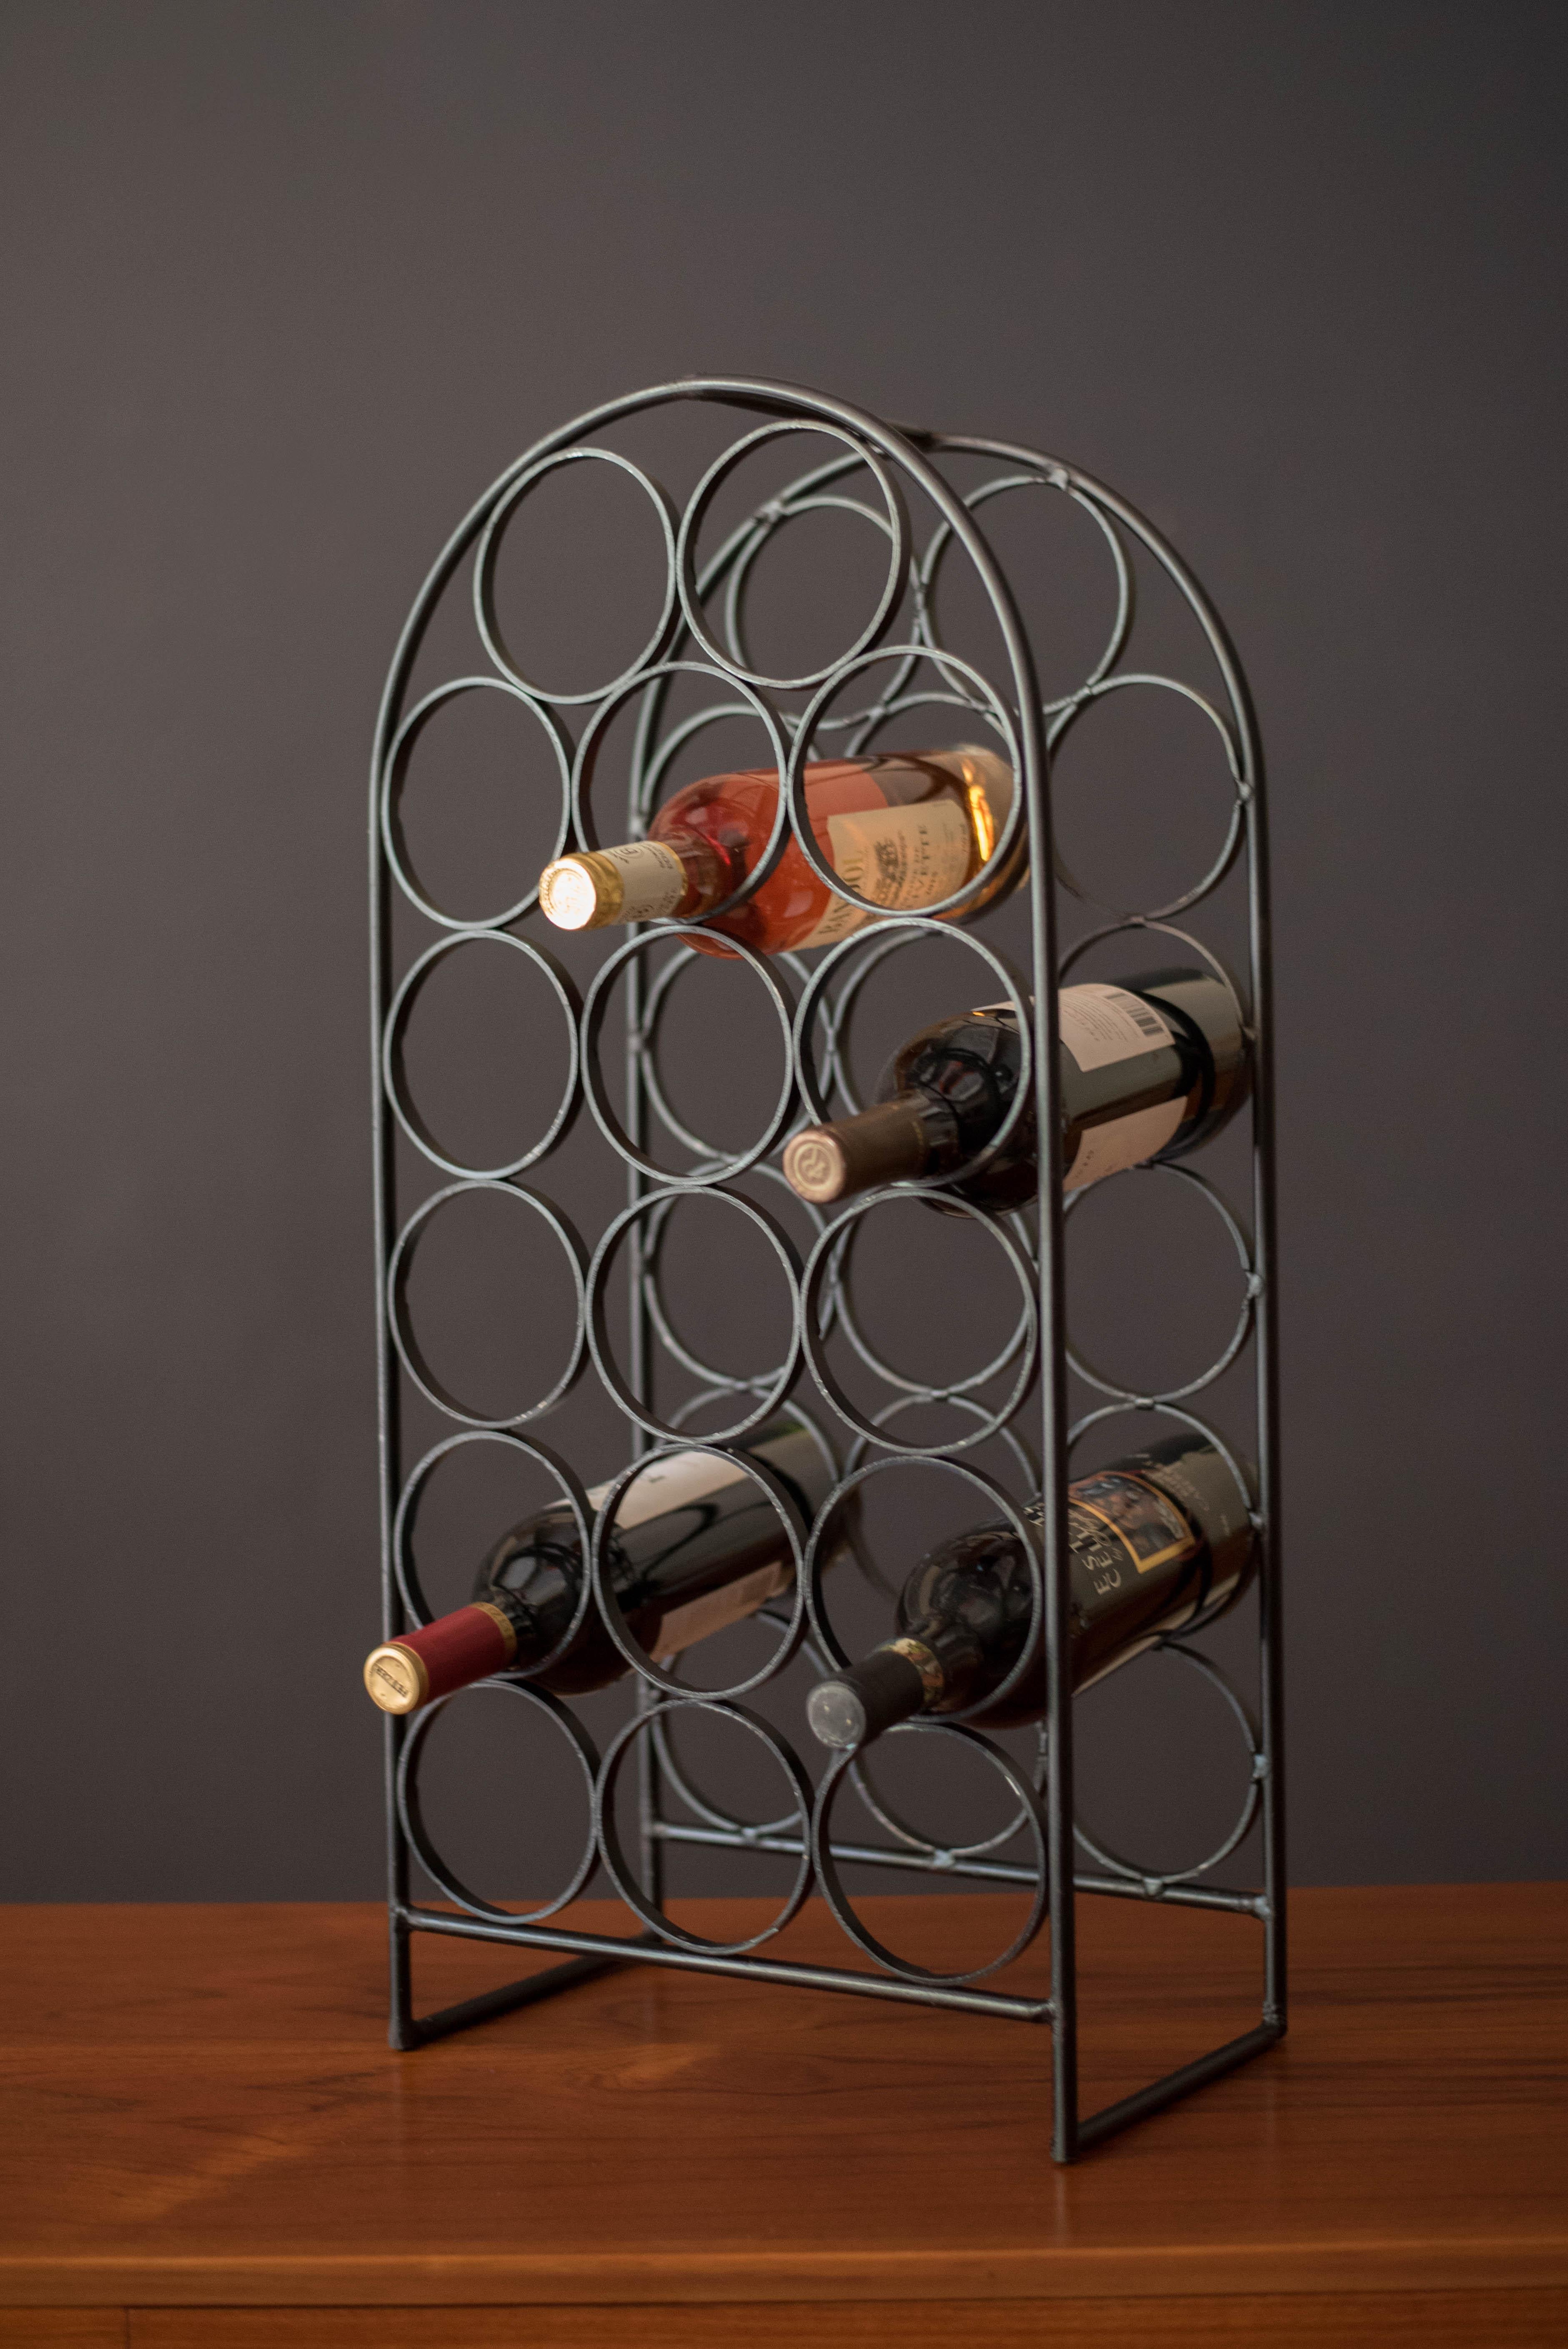 Vintage heavy wine rack en fonte conçu par Arthur Umanoff pour Shaver Howard, circa 1950's. Cette pièce peut accueillir jusqu'à 17 bouteilles avec beaucoup de patine vintage. Un accessoire idéal pour toute collection de décoration moderne. 
 

